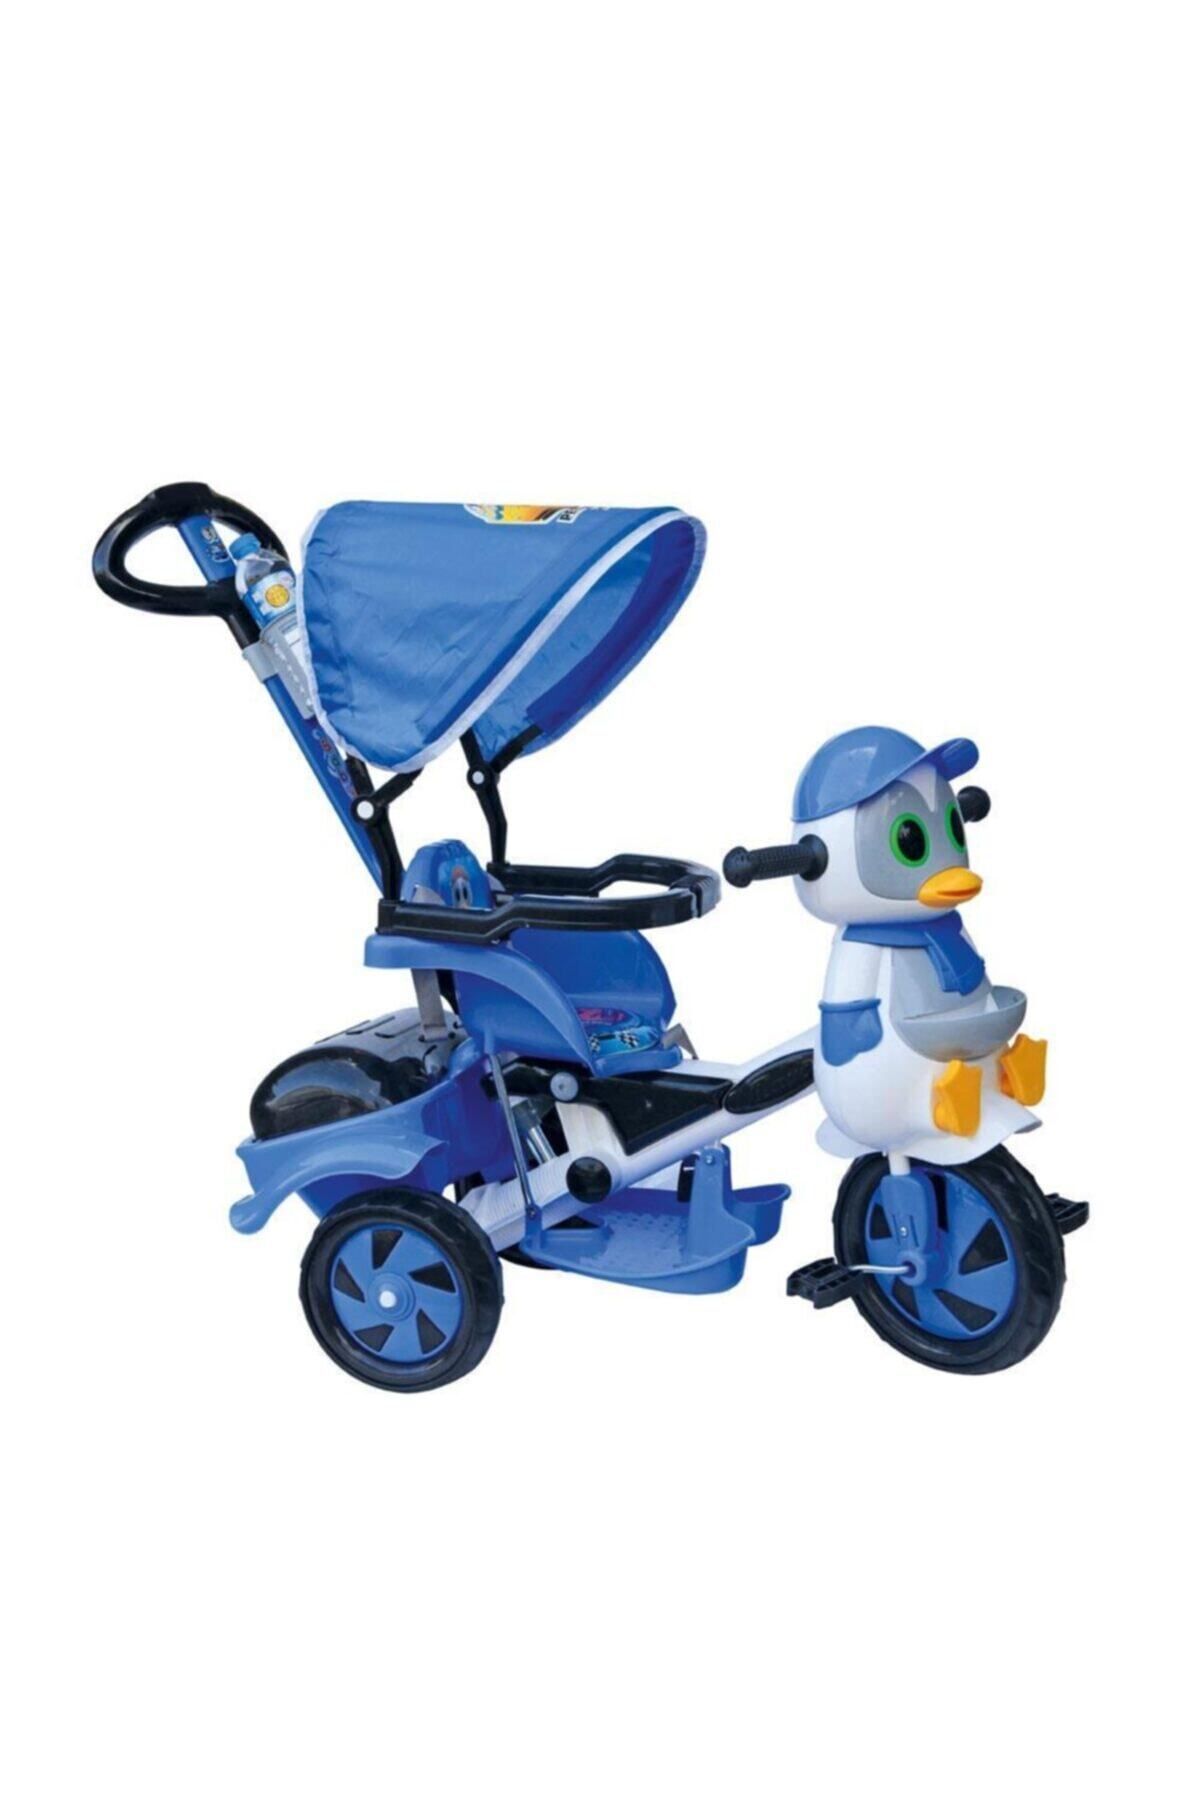 Dilaver Baby Poufi Penguen Ebeveyn Kontrollü Üç Tekerlekli Çocuk Bisikleti - Mavi